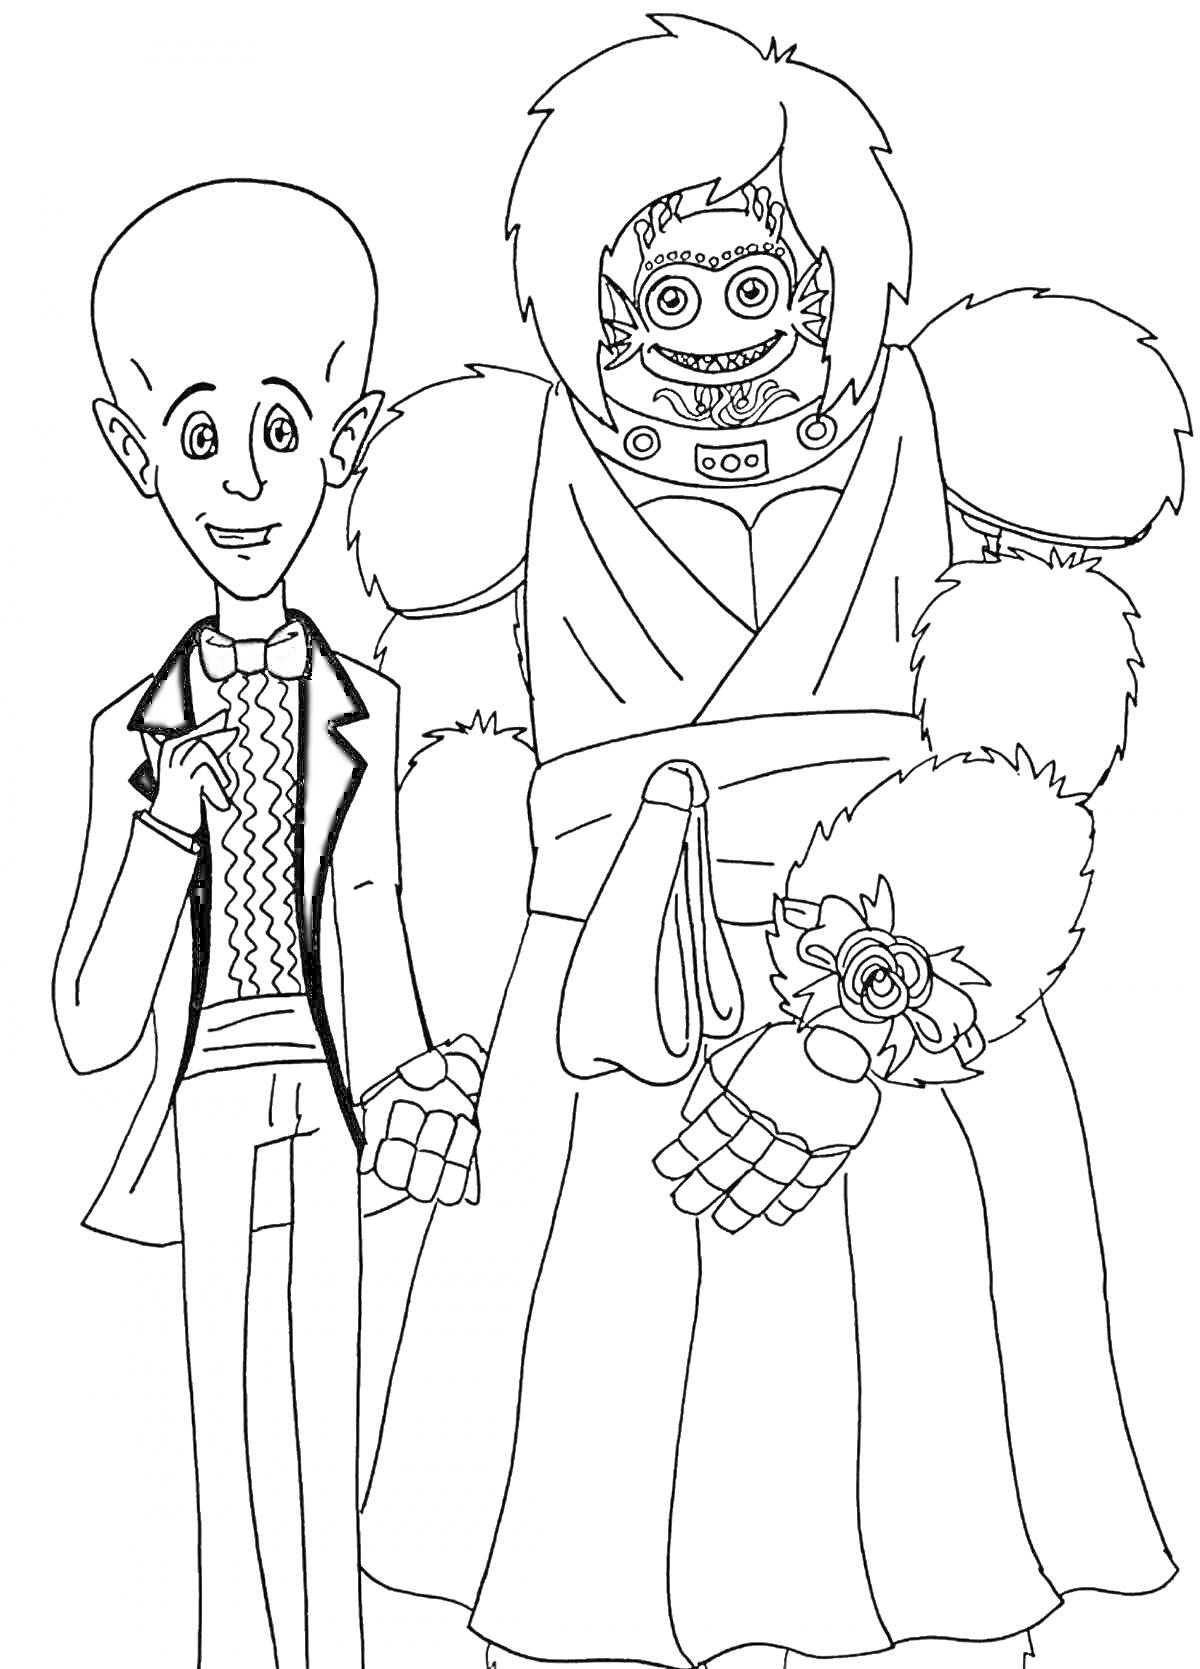 Раскраска Человек в смокинге и робот в платье с цветами